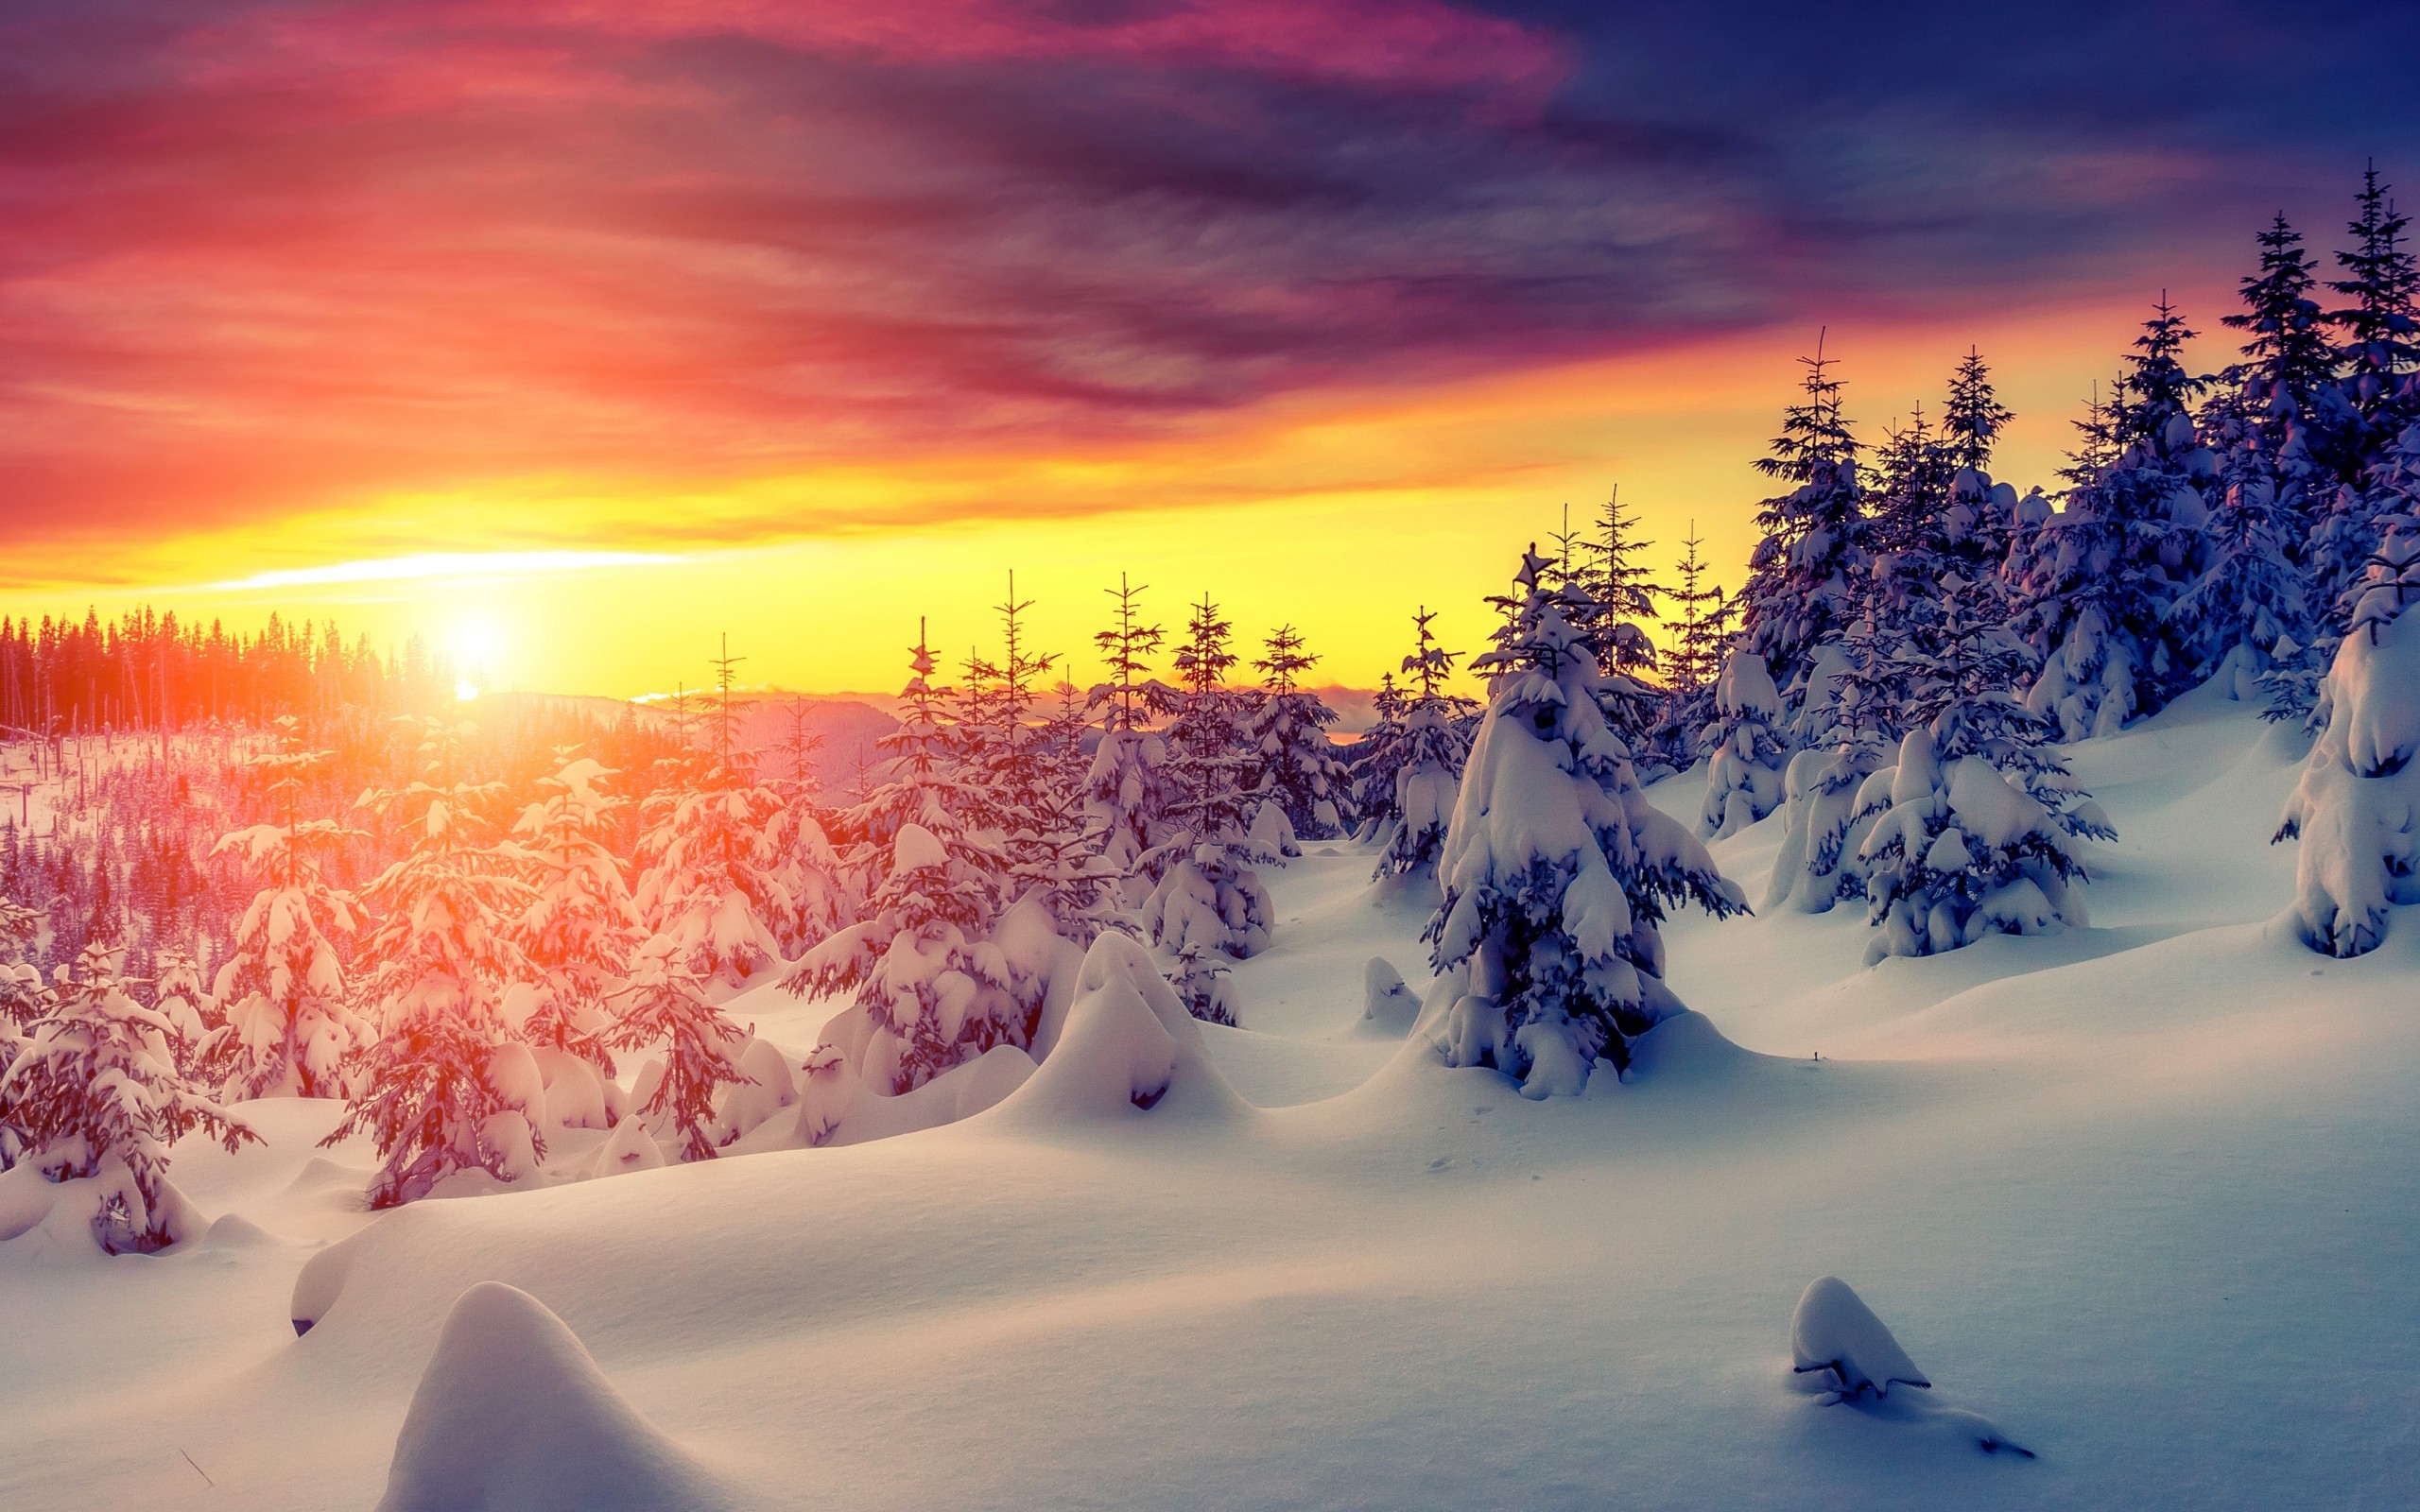 Mùa đông trắng xoá là thời điểm lý tưởng để chiêm ngưỡng những cảnh tuyệt đẹp của mùa đông băng giá. Hình nền với tuyết trắng và thiên nhiên là điều tuyệt vời để giúp bạn cảm nhận và yêu thương mùa đông hơn.